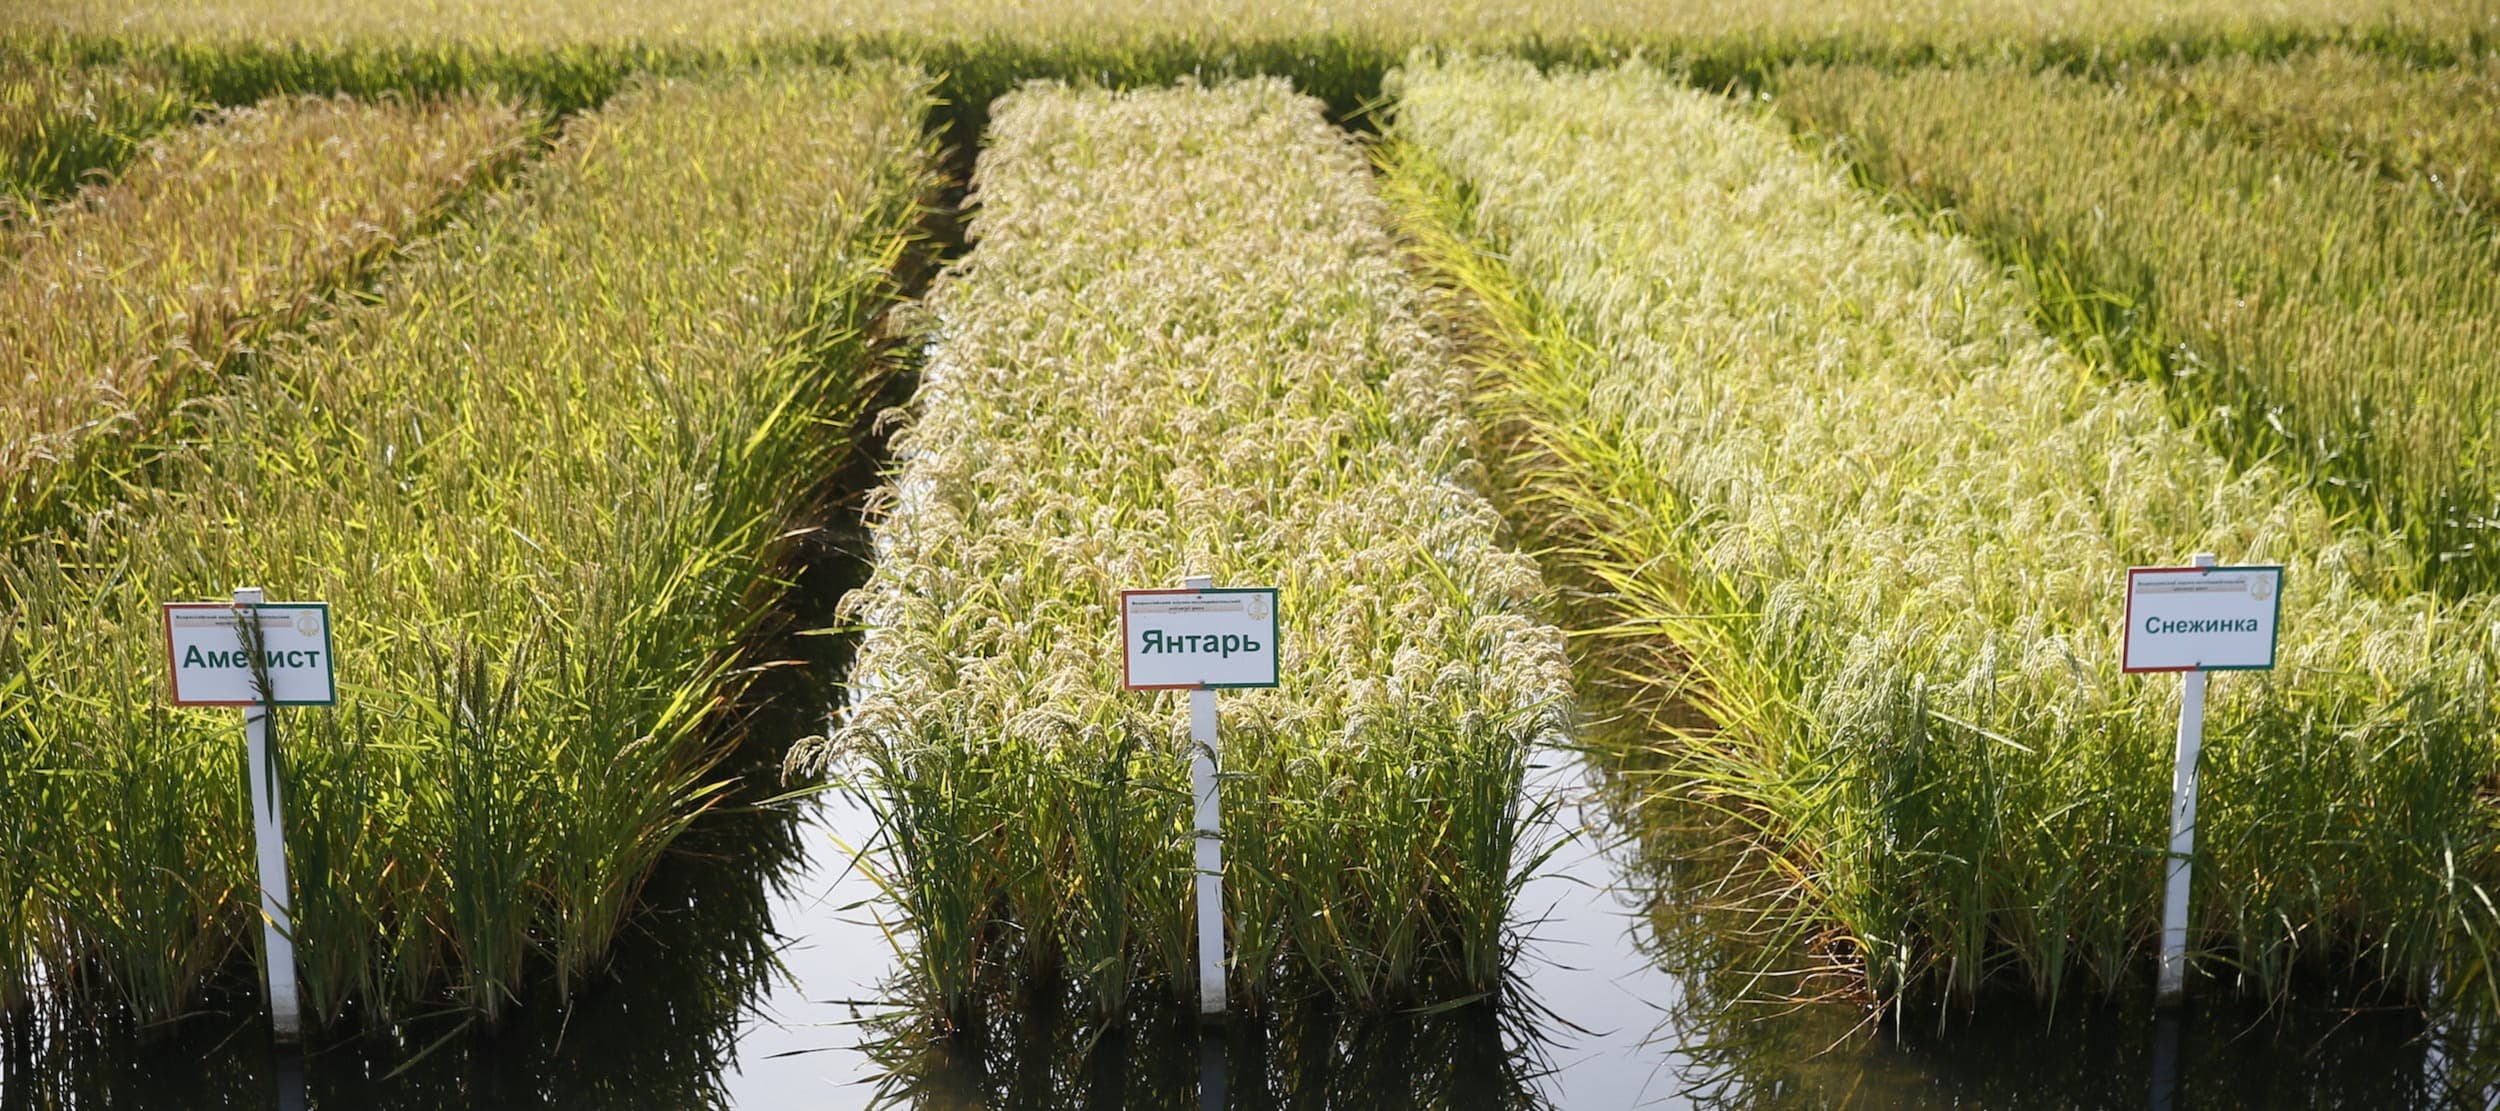 Фото новости: "Кубанские поставщики риса предупредили о повышении цен из-за неурожая"